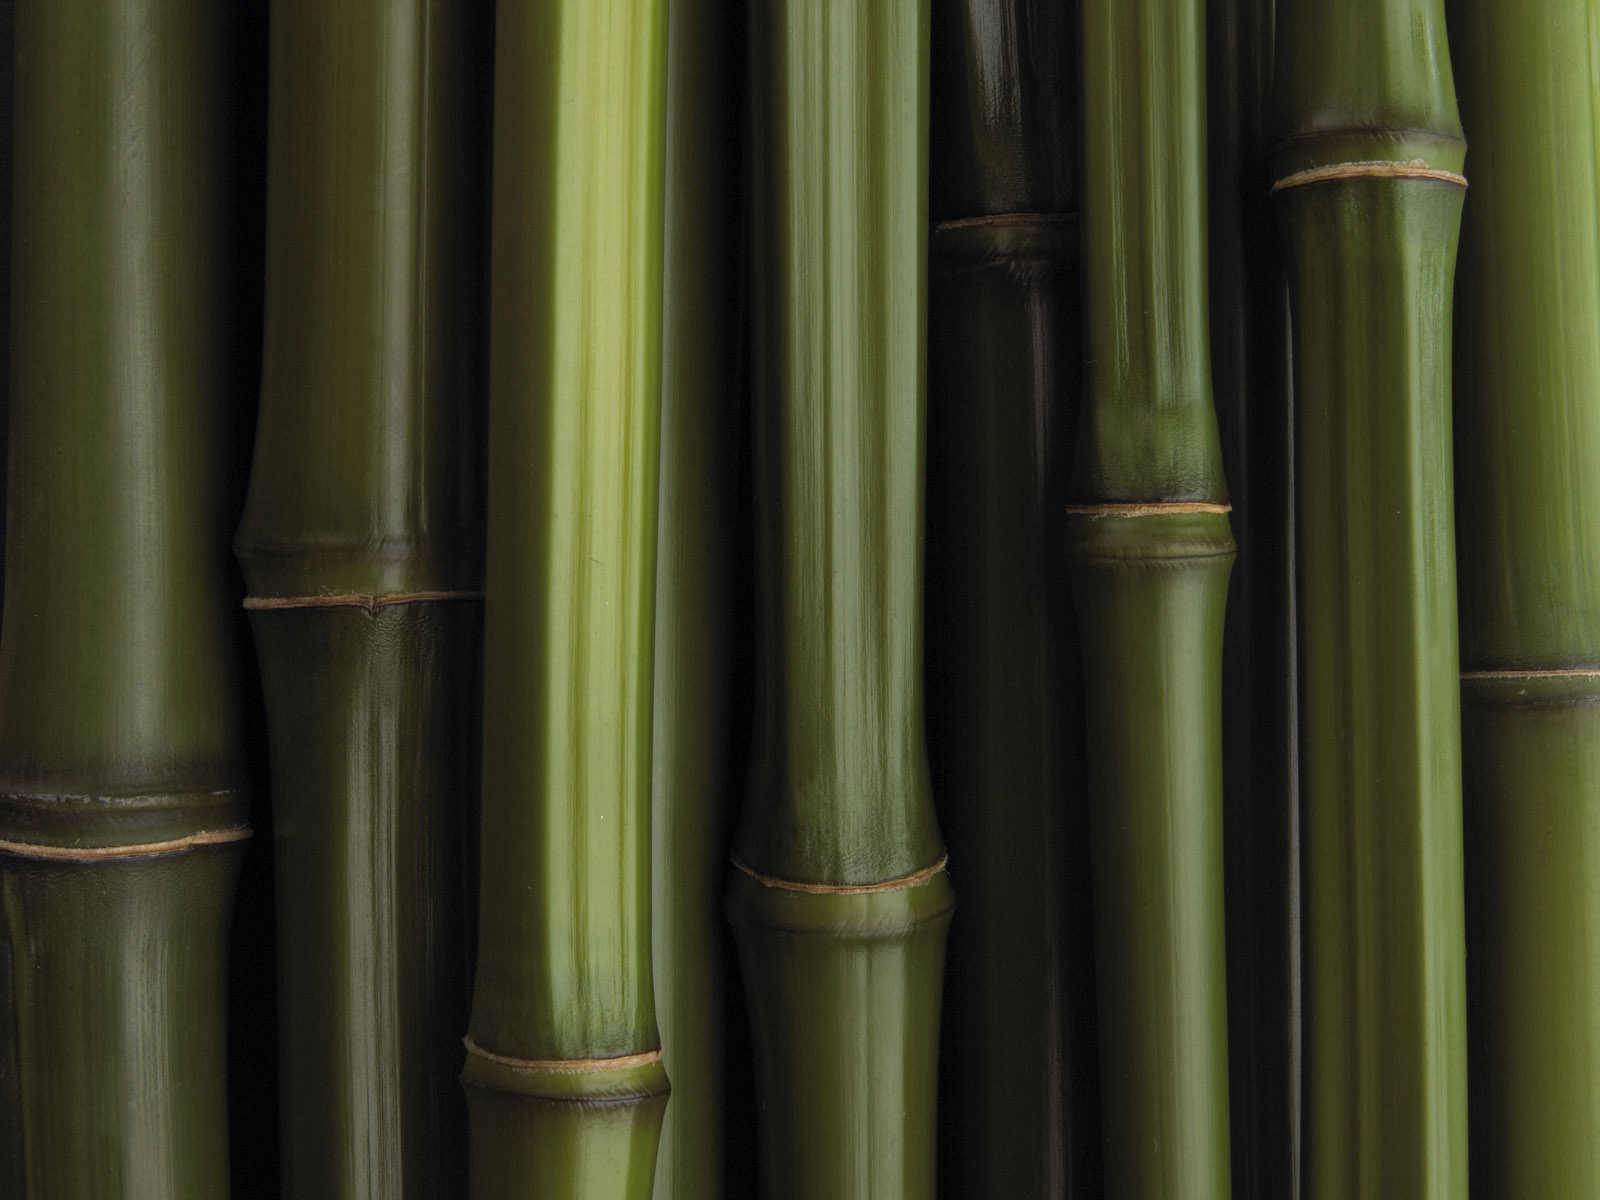 Previous, Creative Wallpaper - Bamboo texture wallpaper